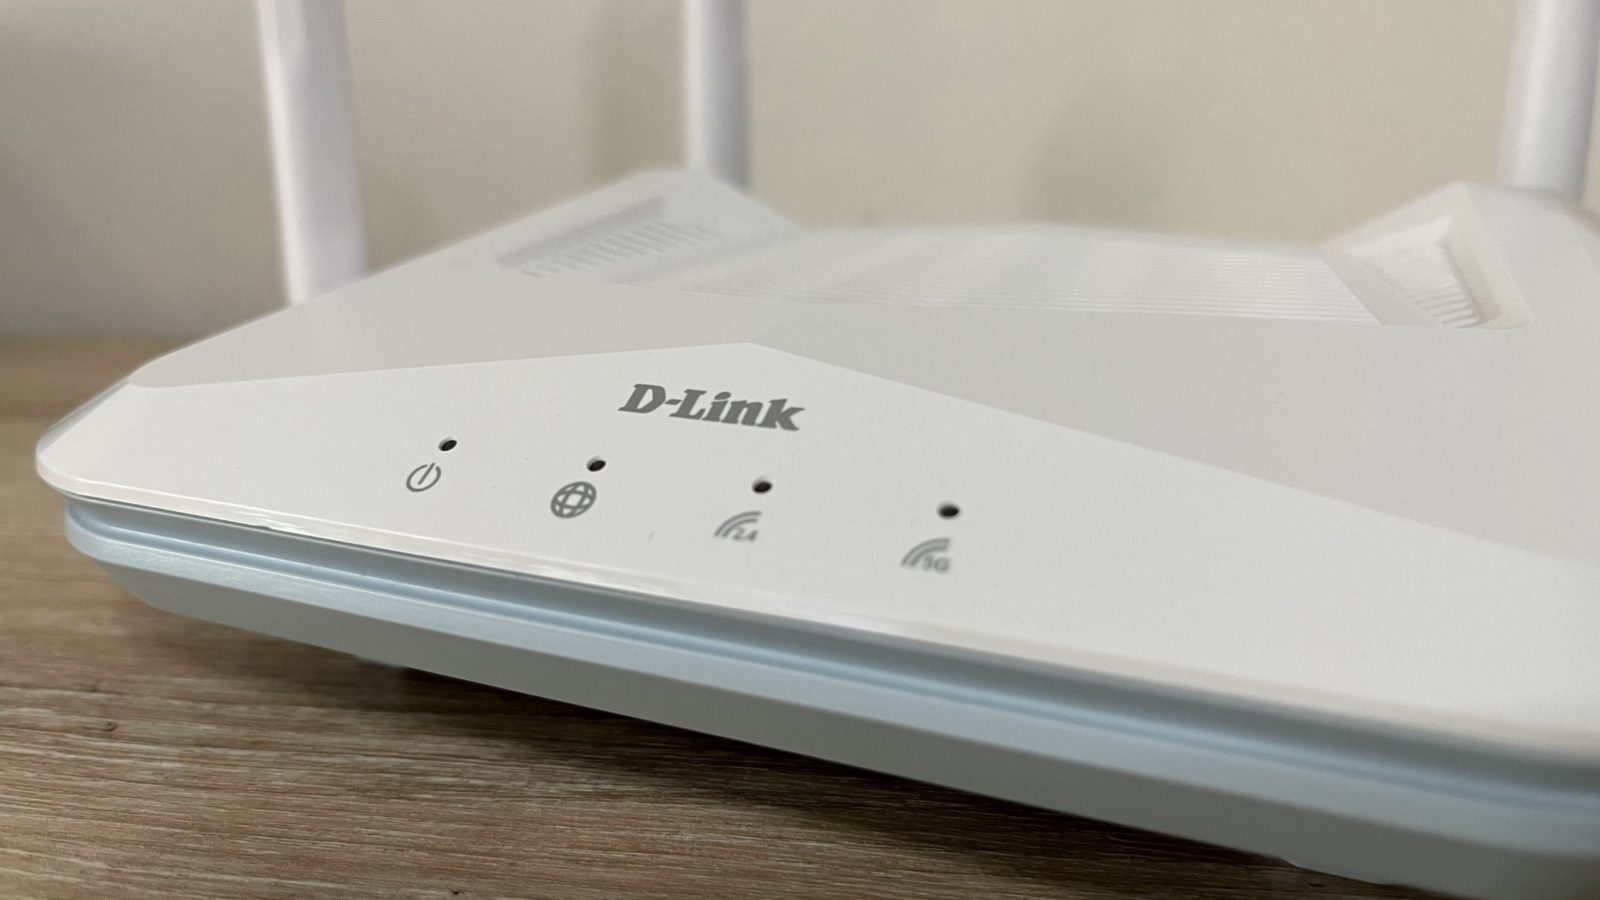 Роутер D-LINK как приемник Wi-Fi